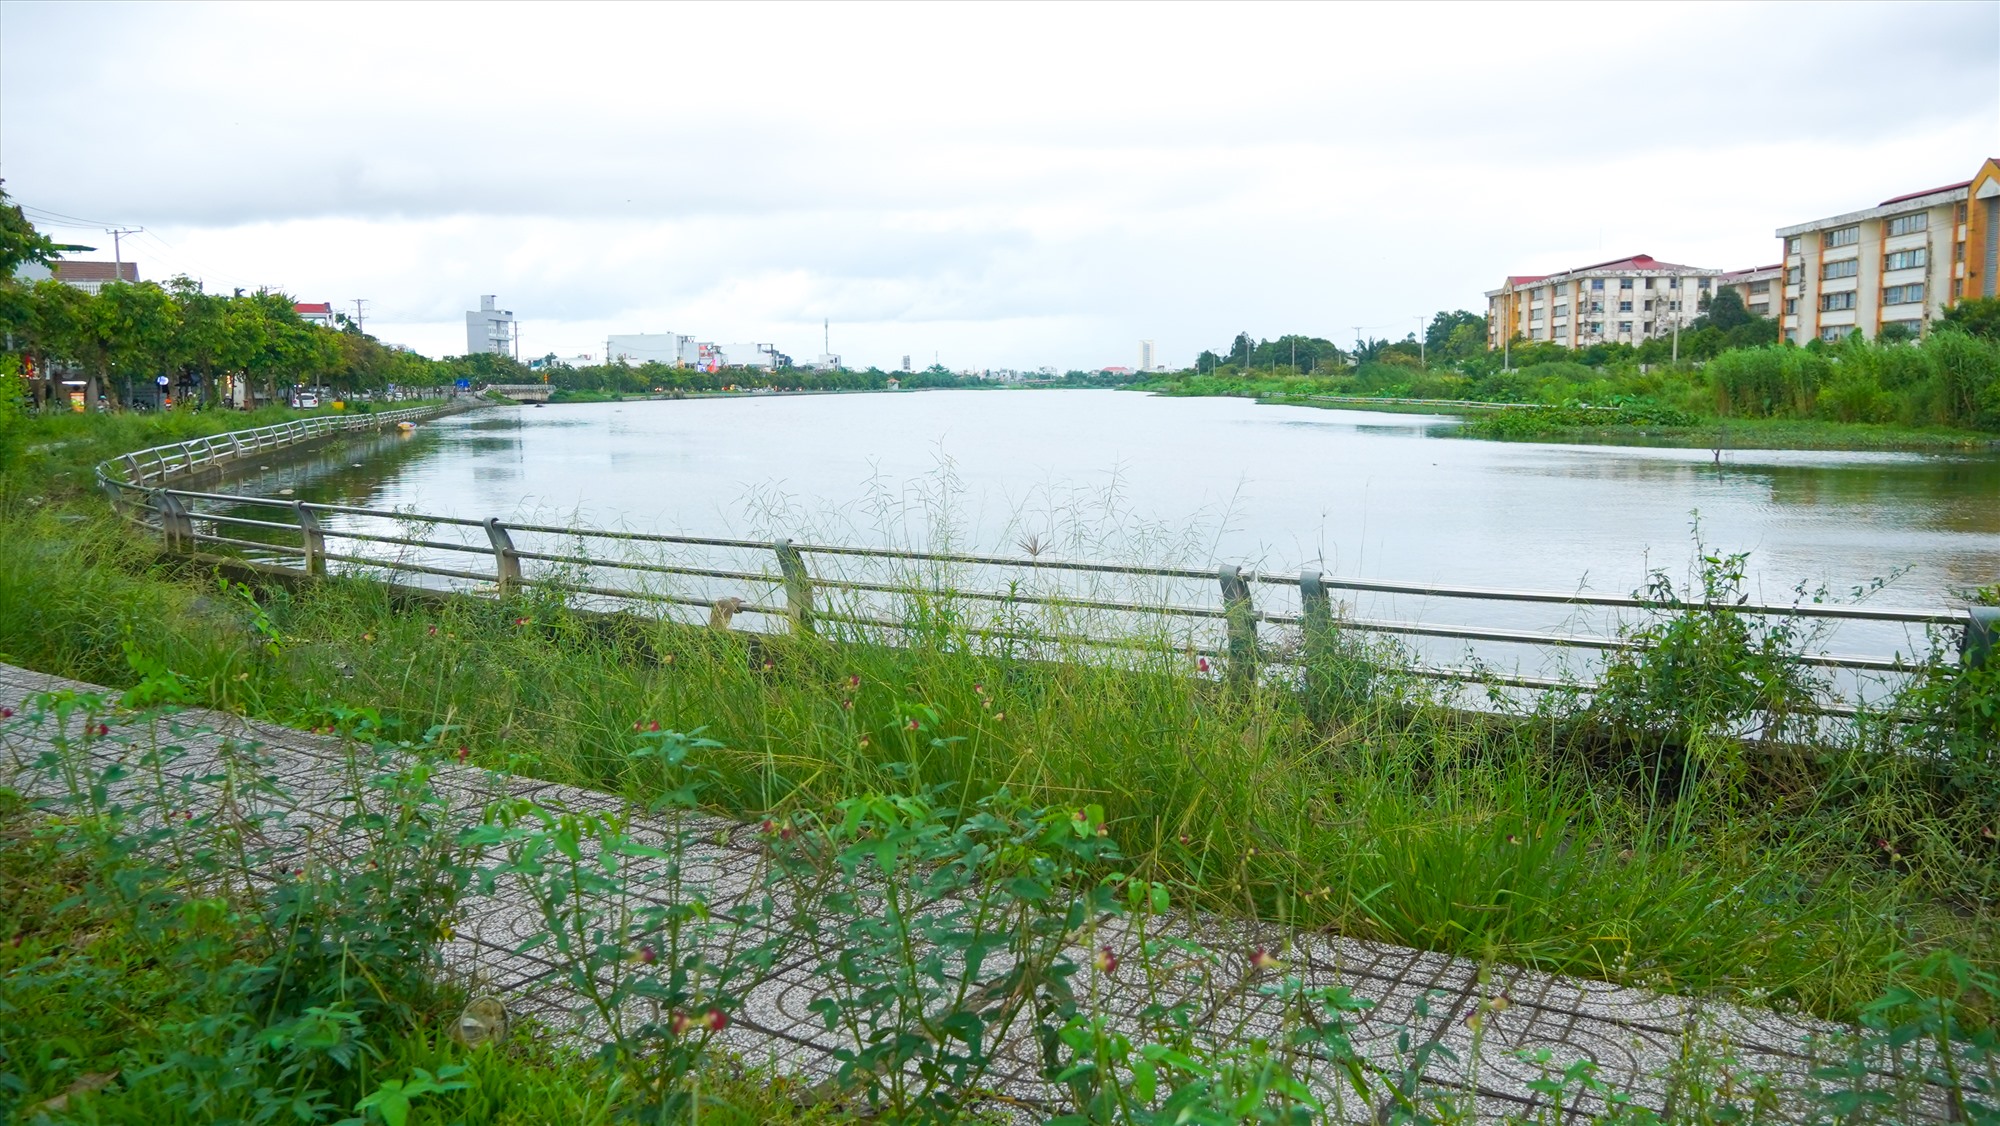 “Hồ nước rất đẹp nhưng hiện nay chỉ mới được sử dụng chủ yếu với vai trò tiêu thoát nước, tiếc là chưa được thành phố đầu tư khai thác để phát triển du lịch”, ông Kiểm nói.